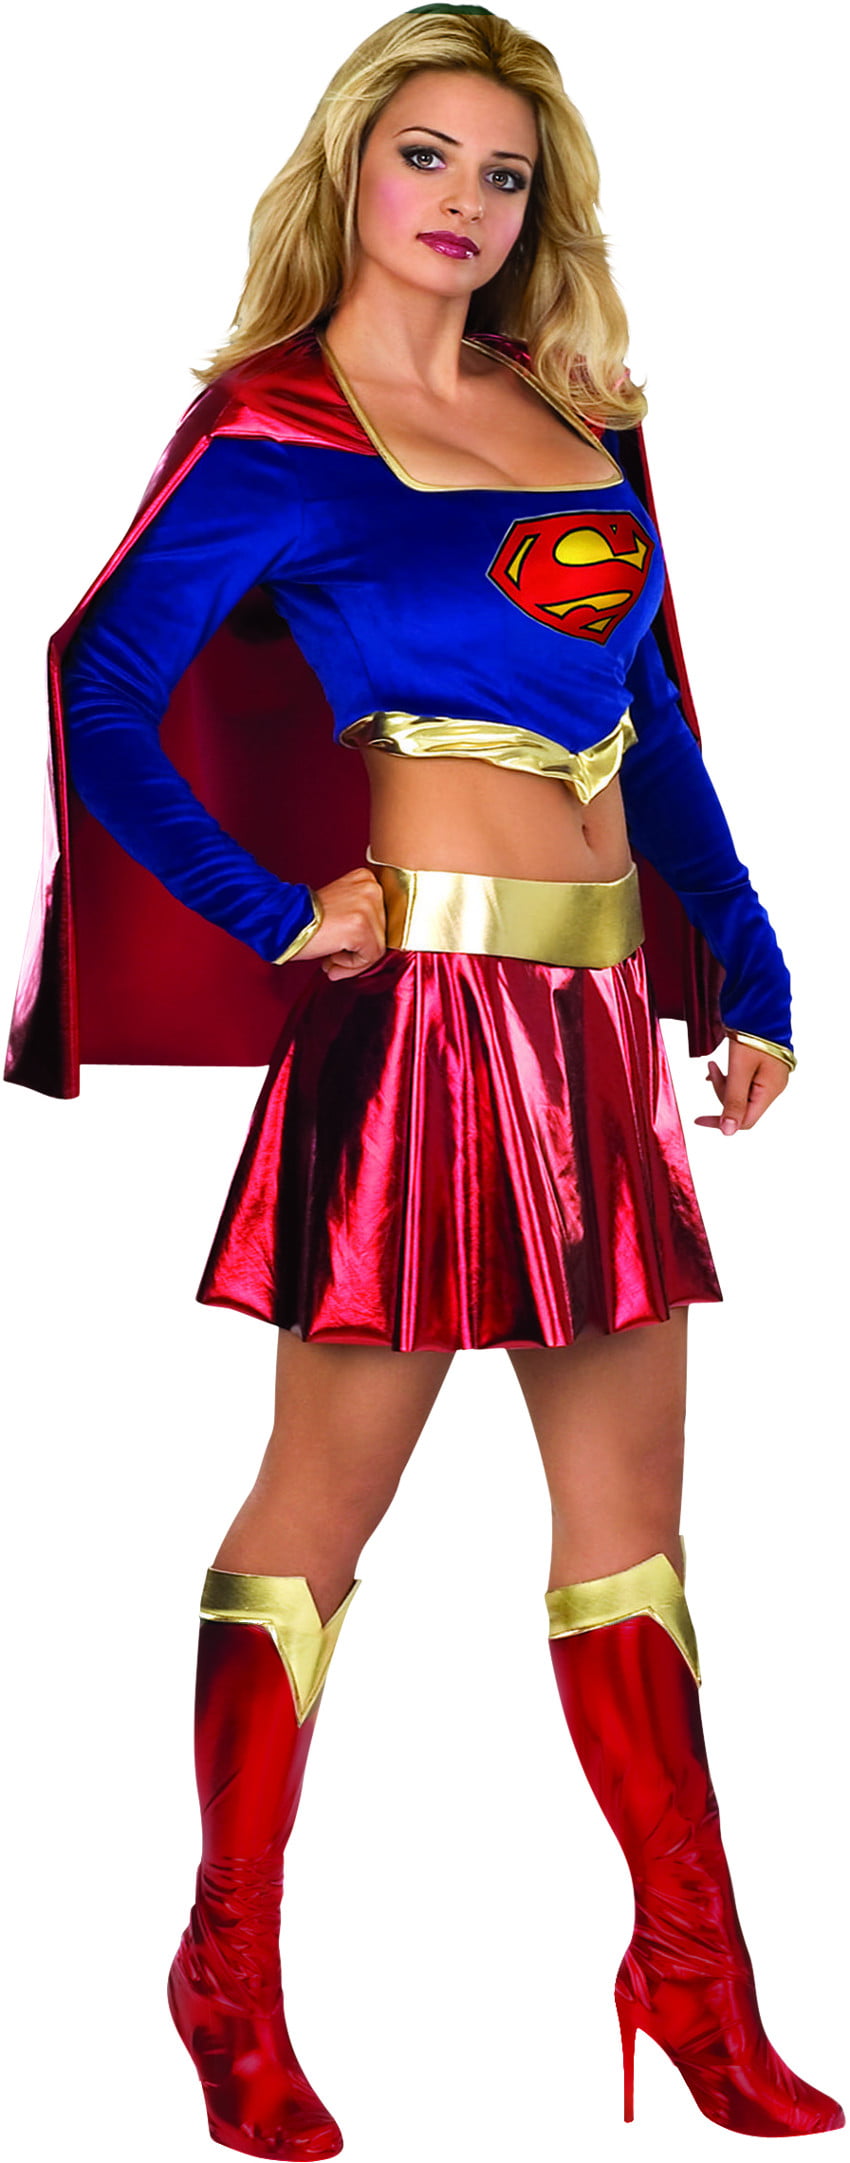 Girls Teenage Supergirl Costume Superhero Costumes For Teenage Girls ...